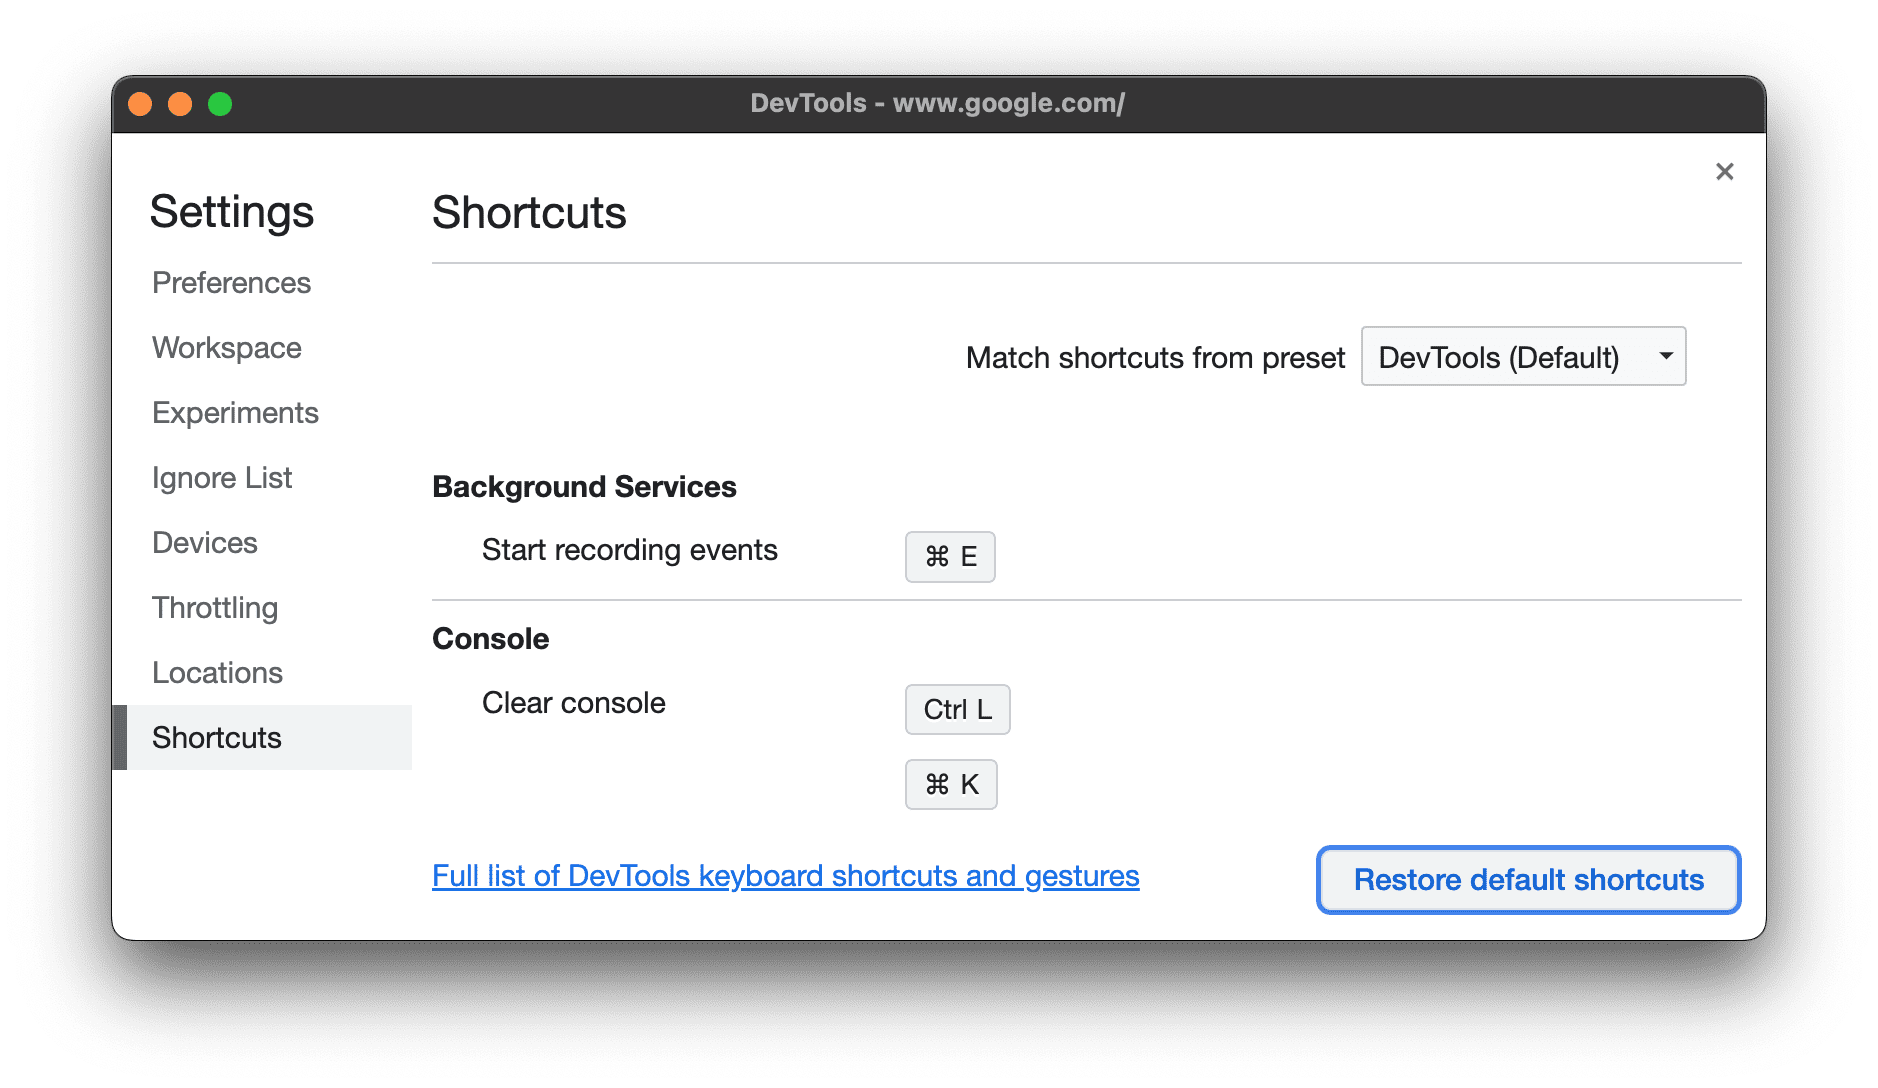 Restore default shortcuts.